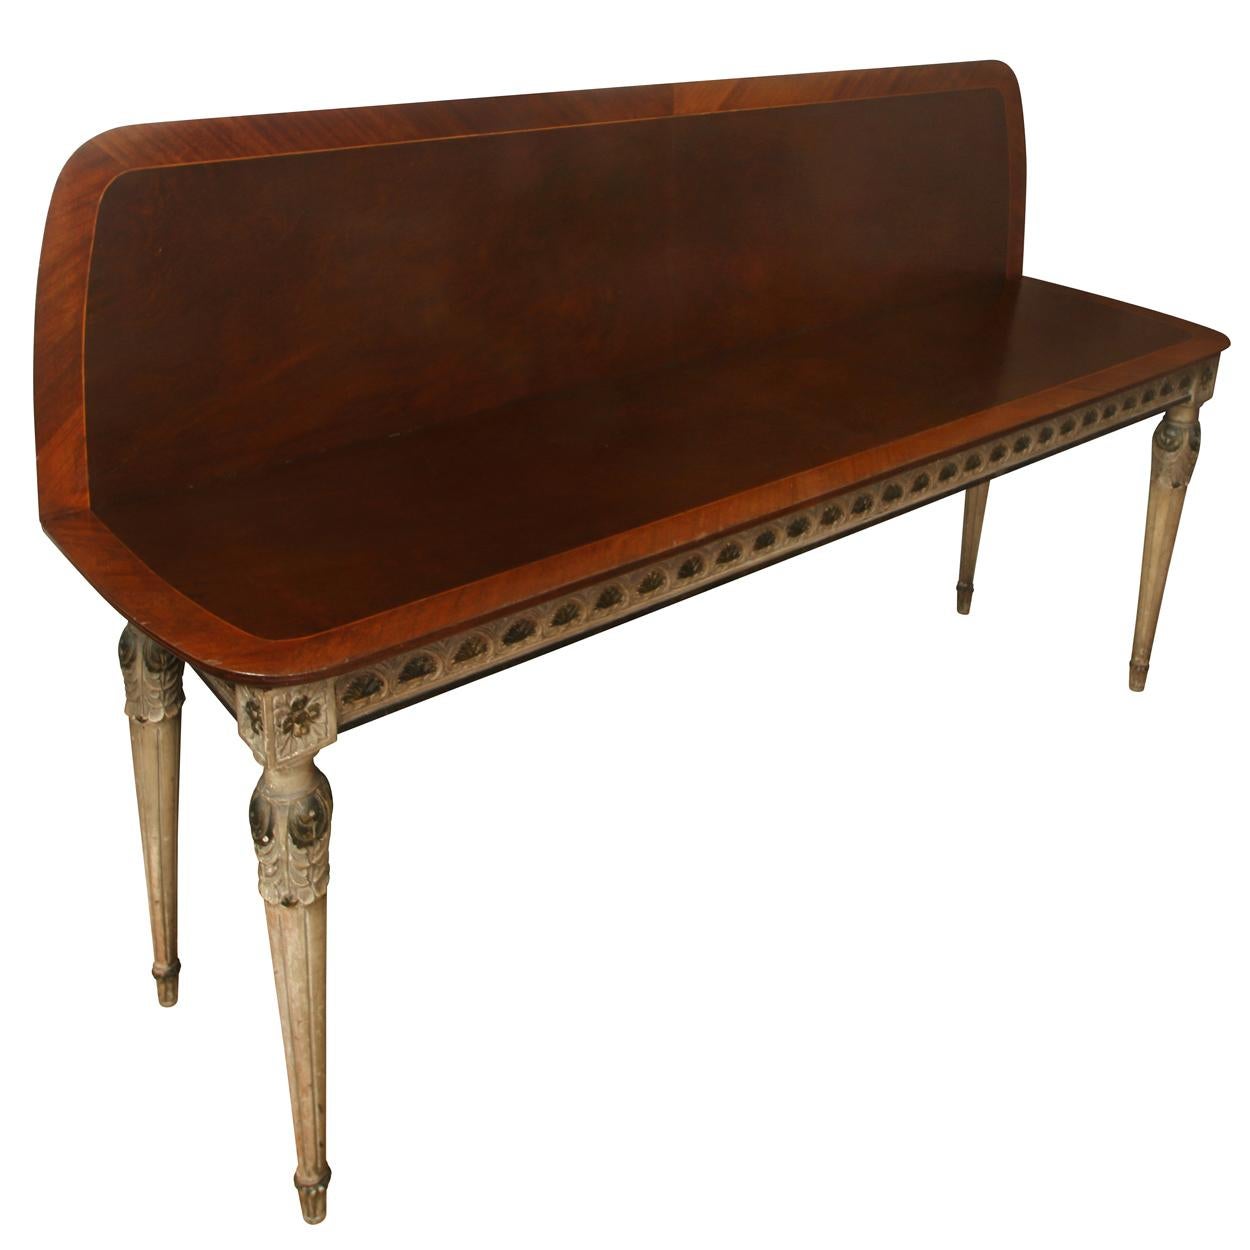 Une table console de style néoclassique métamorphosée avec des détails sculptés et peints. Le plateau en bois foncé est bordé d'une bande incrustée d'un bois de couleur plus claire et d'un motif complexe à chaque coin. Le tablier et les pieds peints